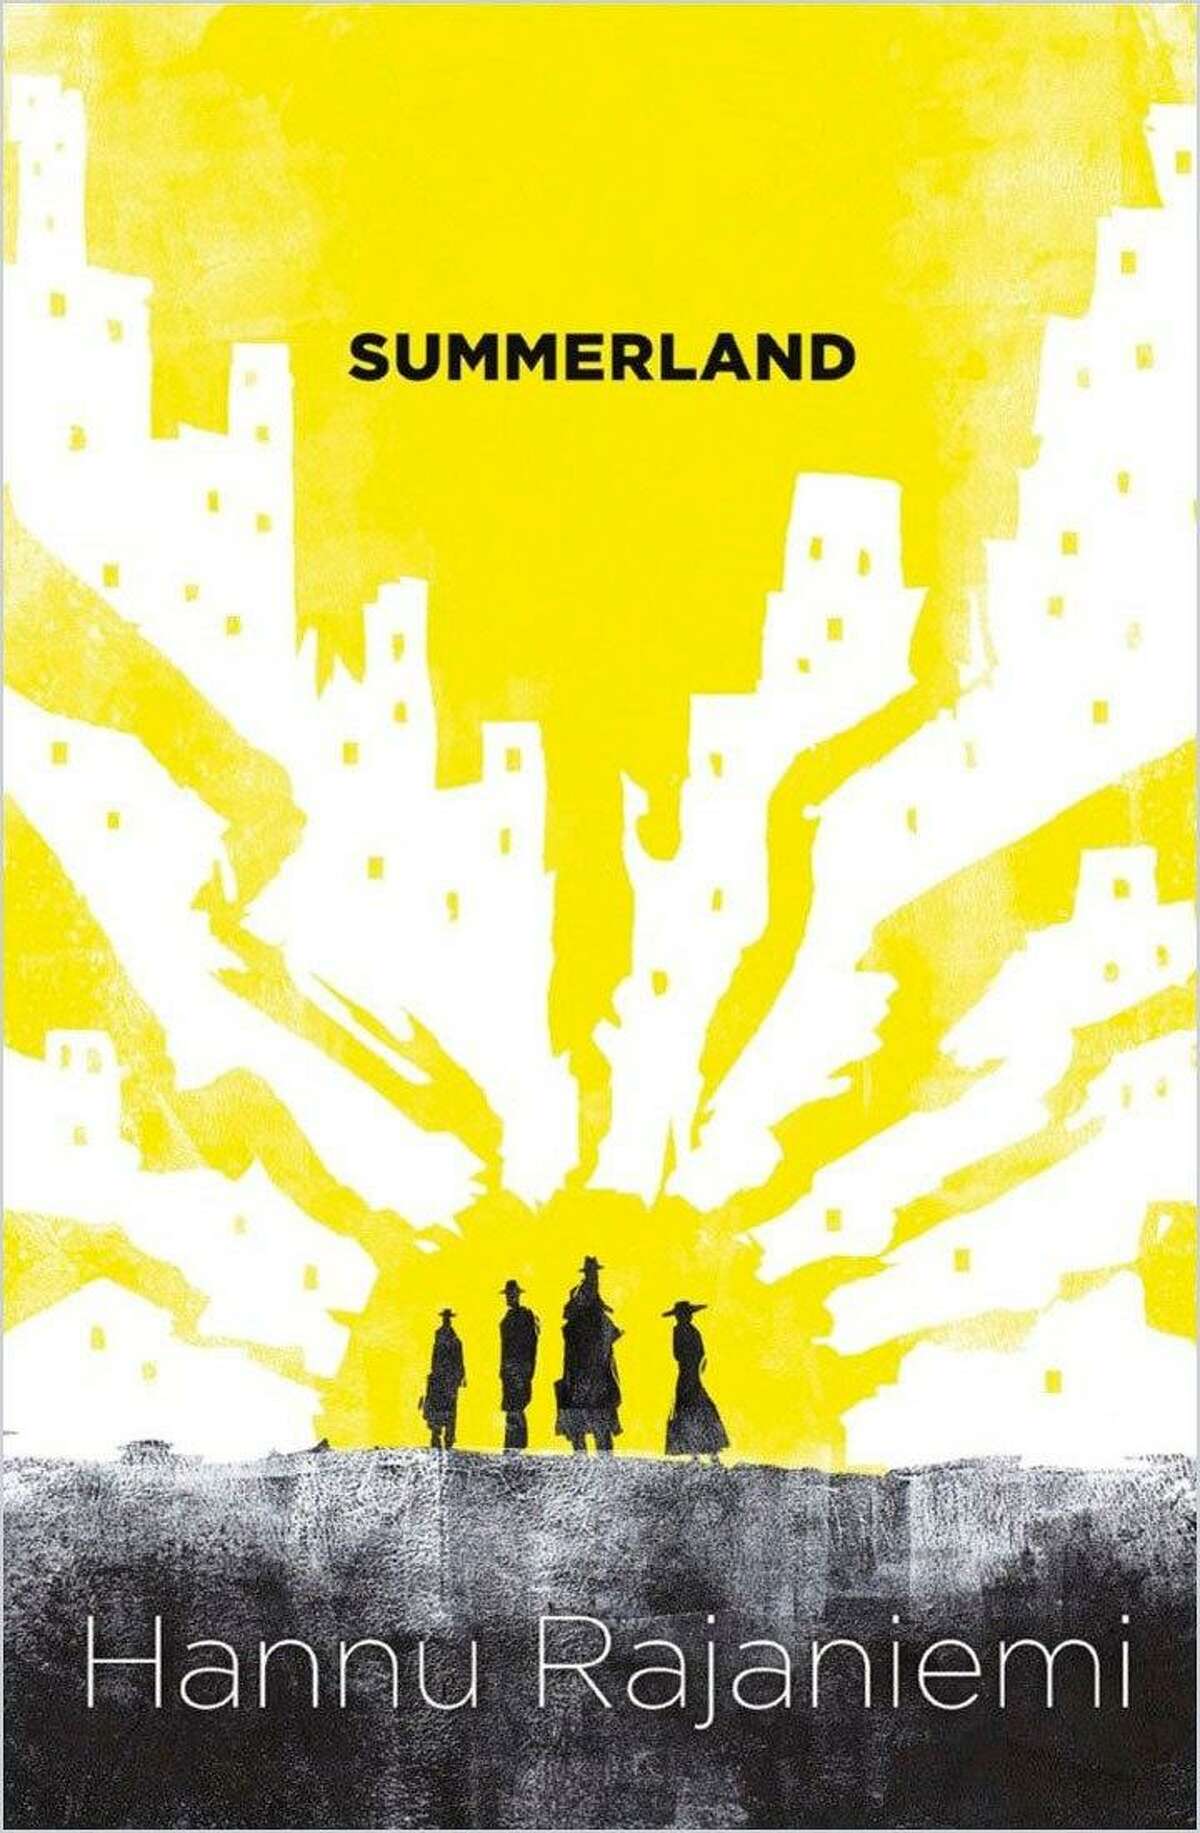 "Summerland"